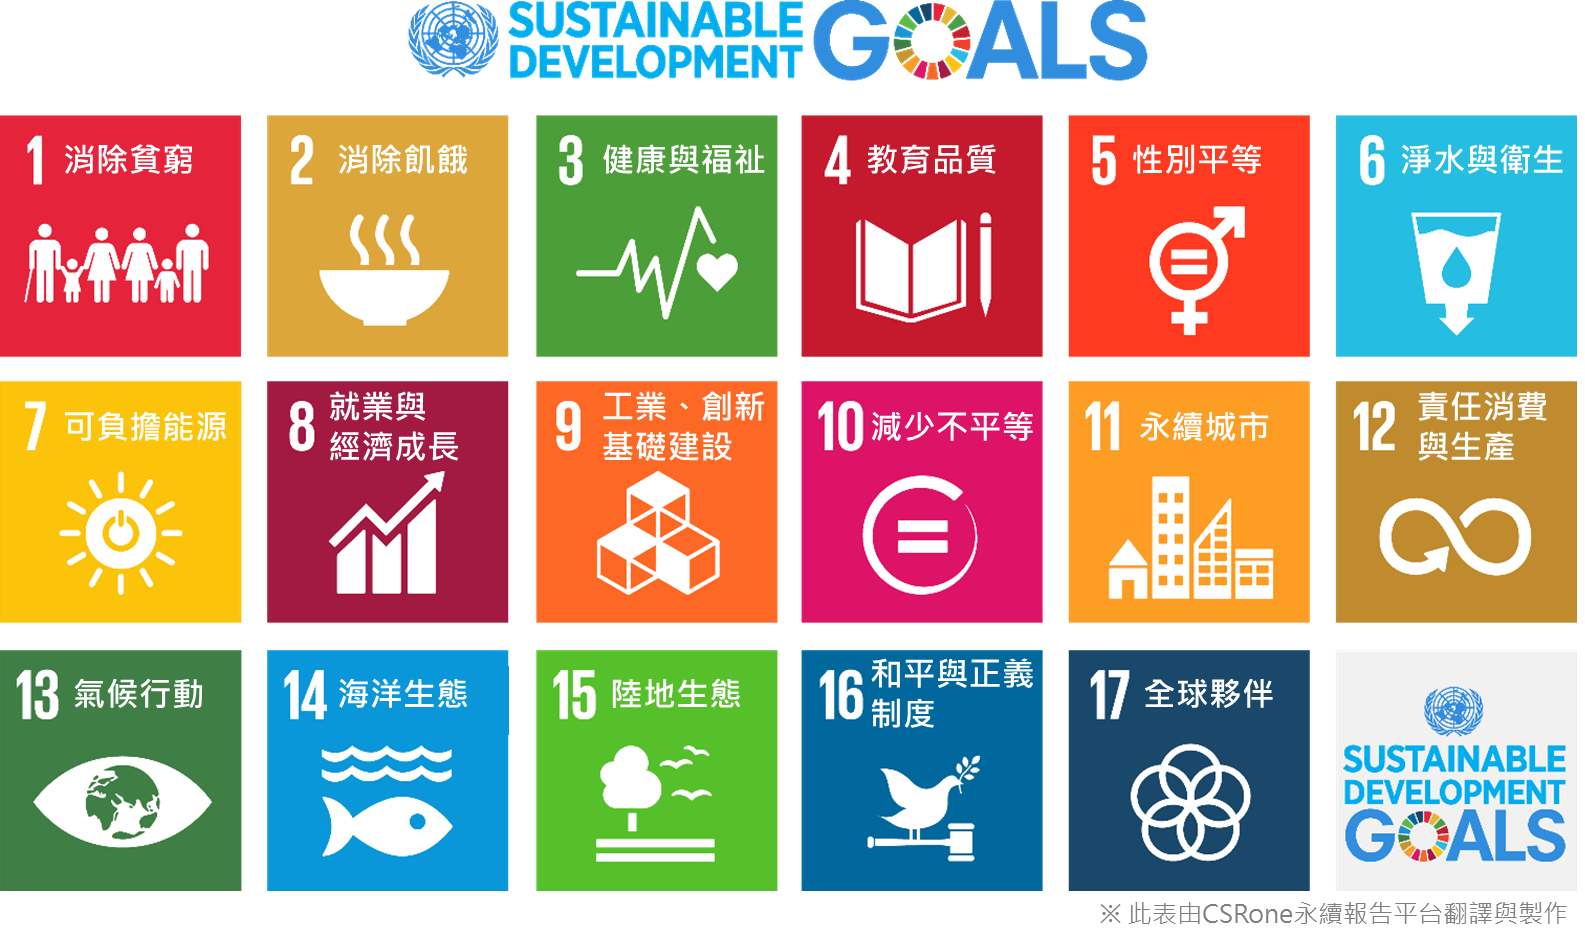 2030永續新禧年-17項永續發展目標(SDGs)－中文版圖表－CSRone-20150925.png - 日誌用相簿